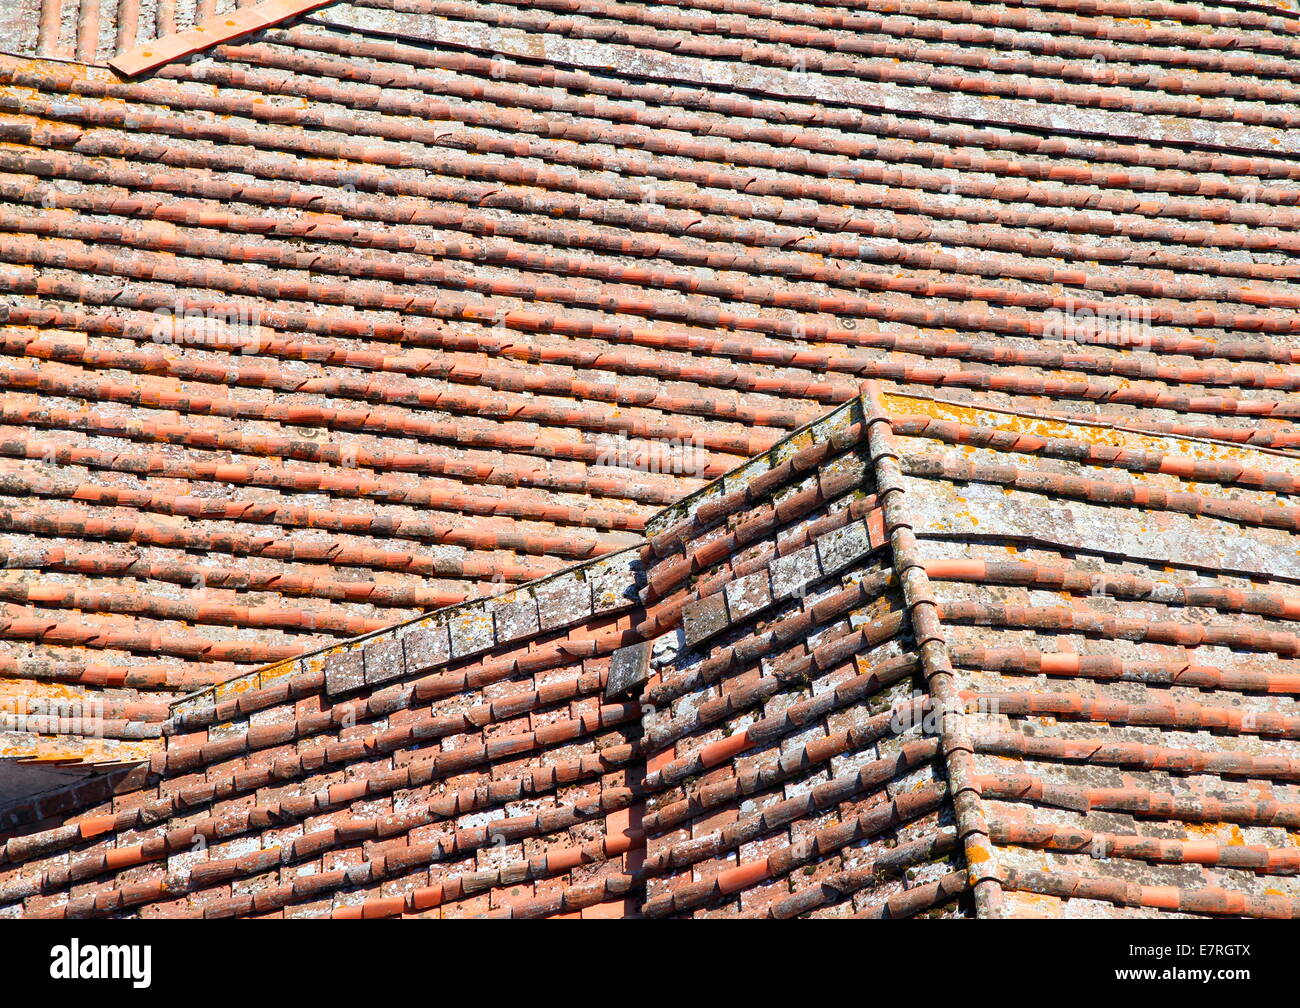 Tetti di terracotta a Lucca, Italia Foto Stock